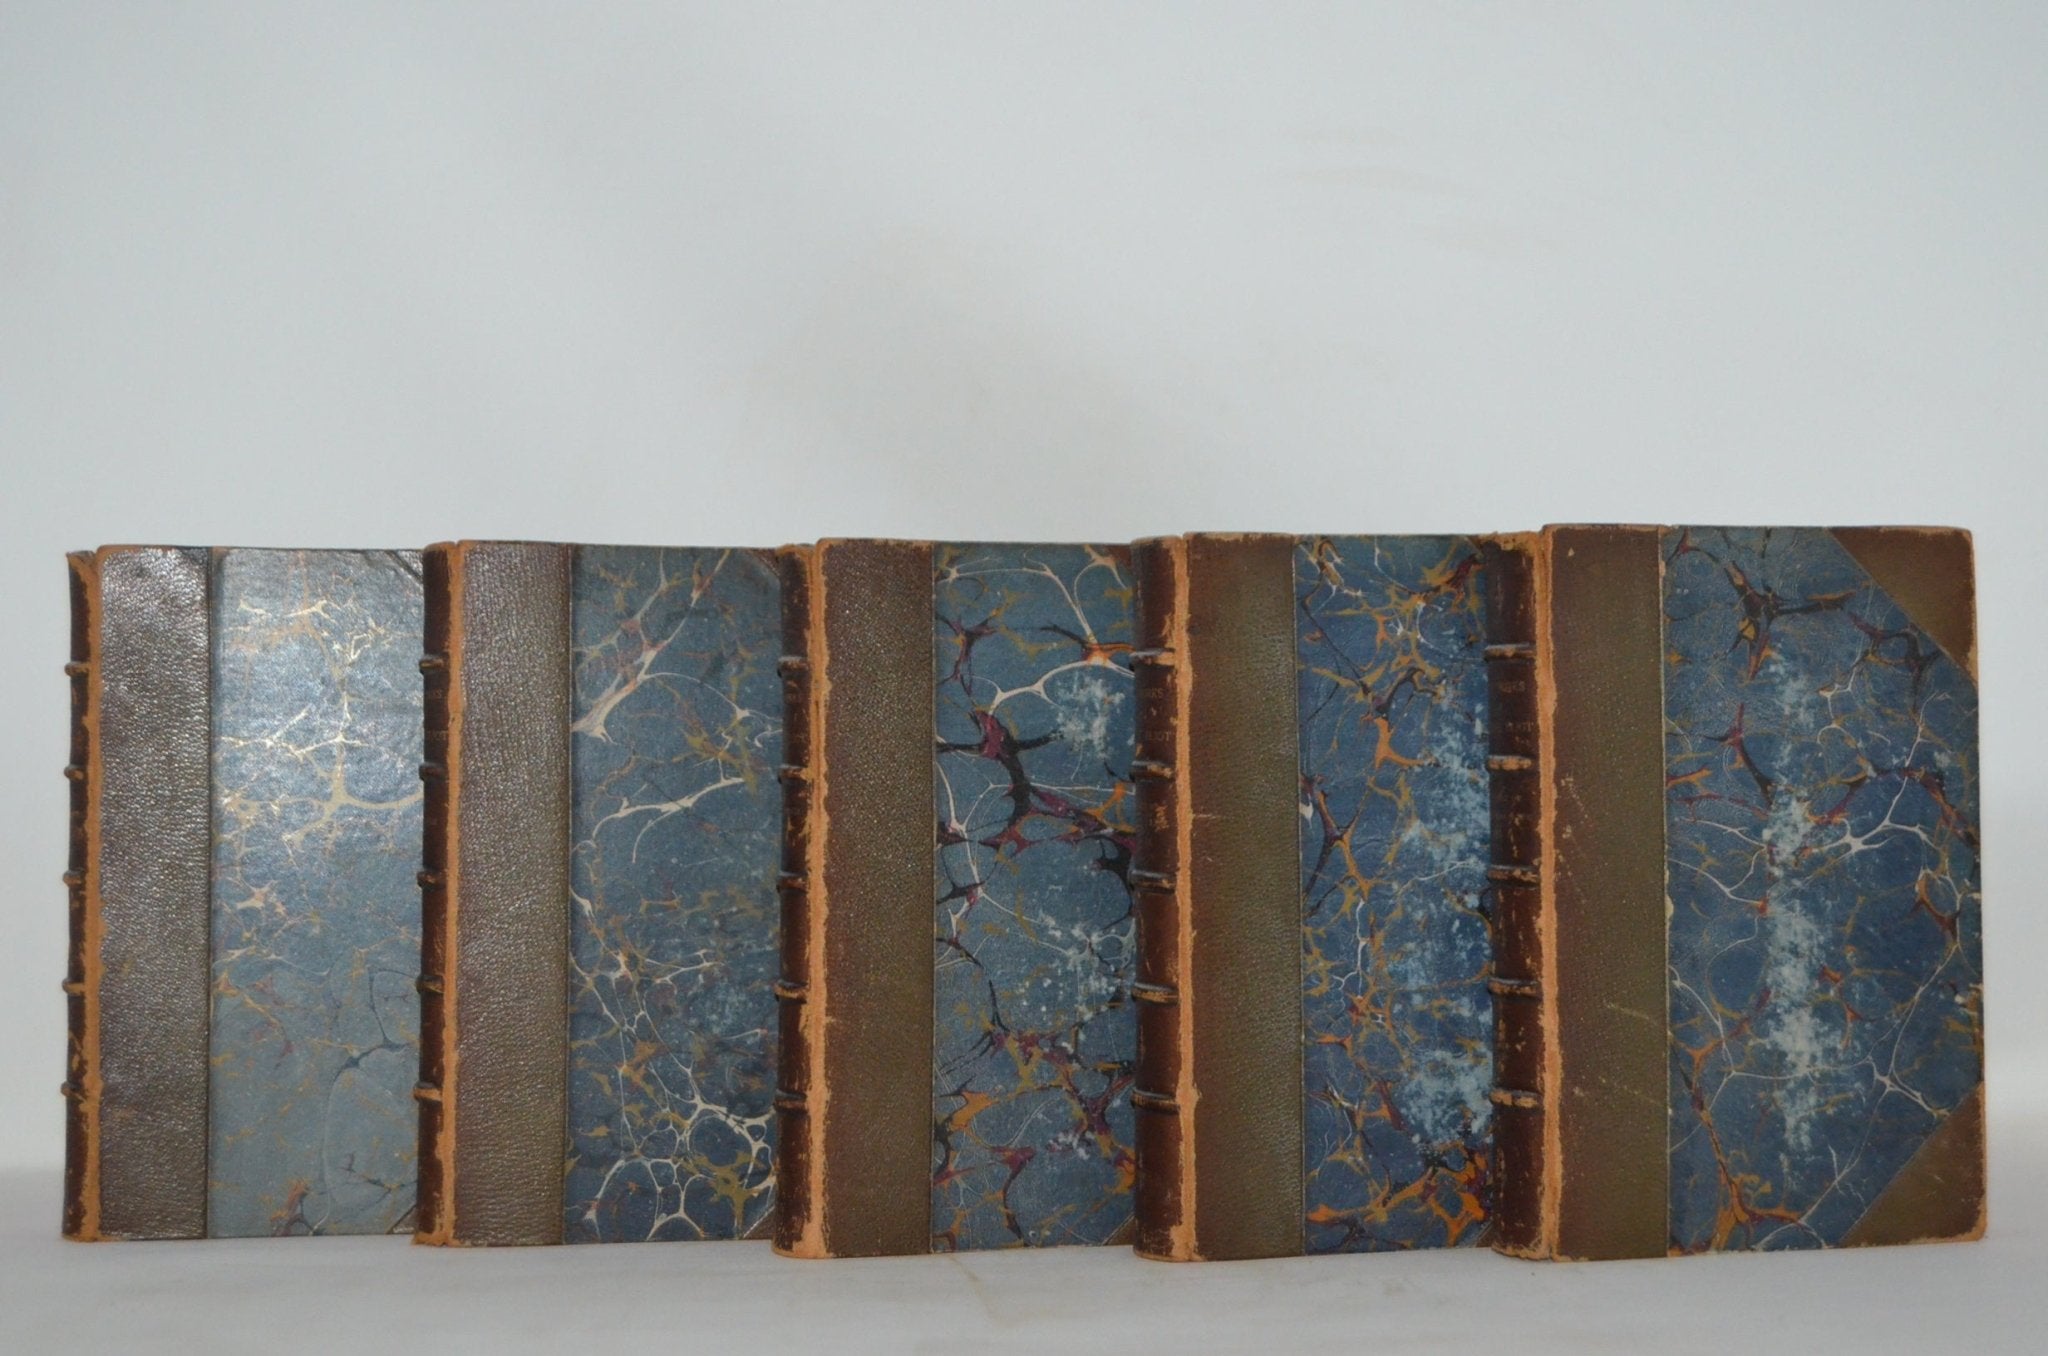 Antique Leather Bound Book Décor – 6” Dark Brown - George Elliot - Brookfield Books